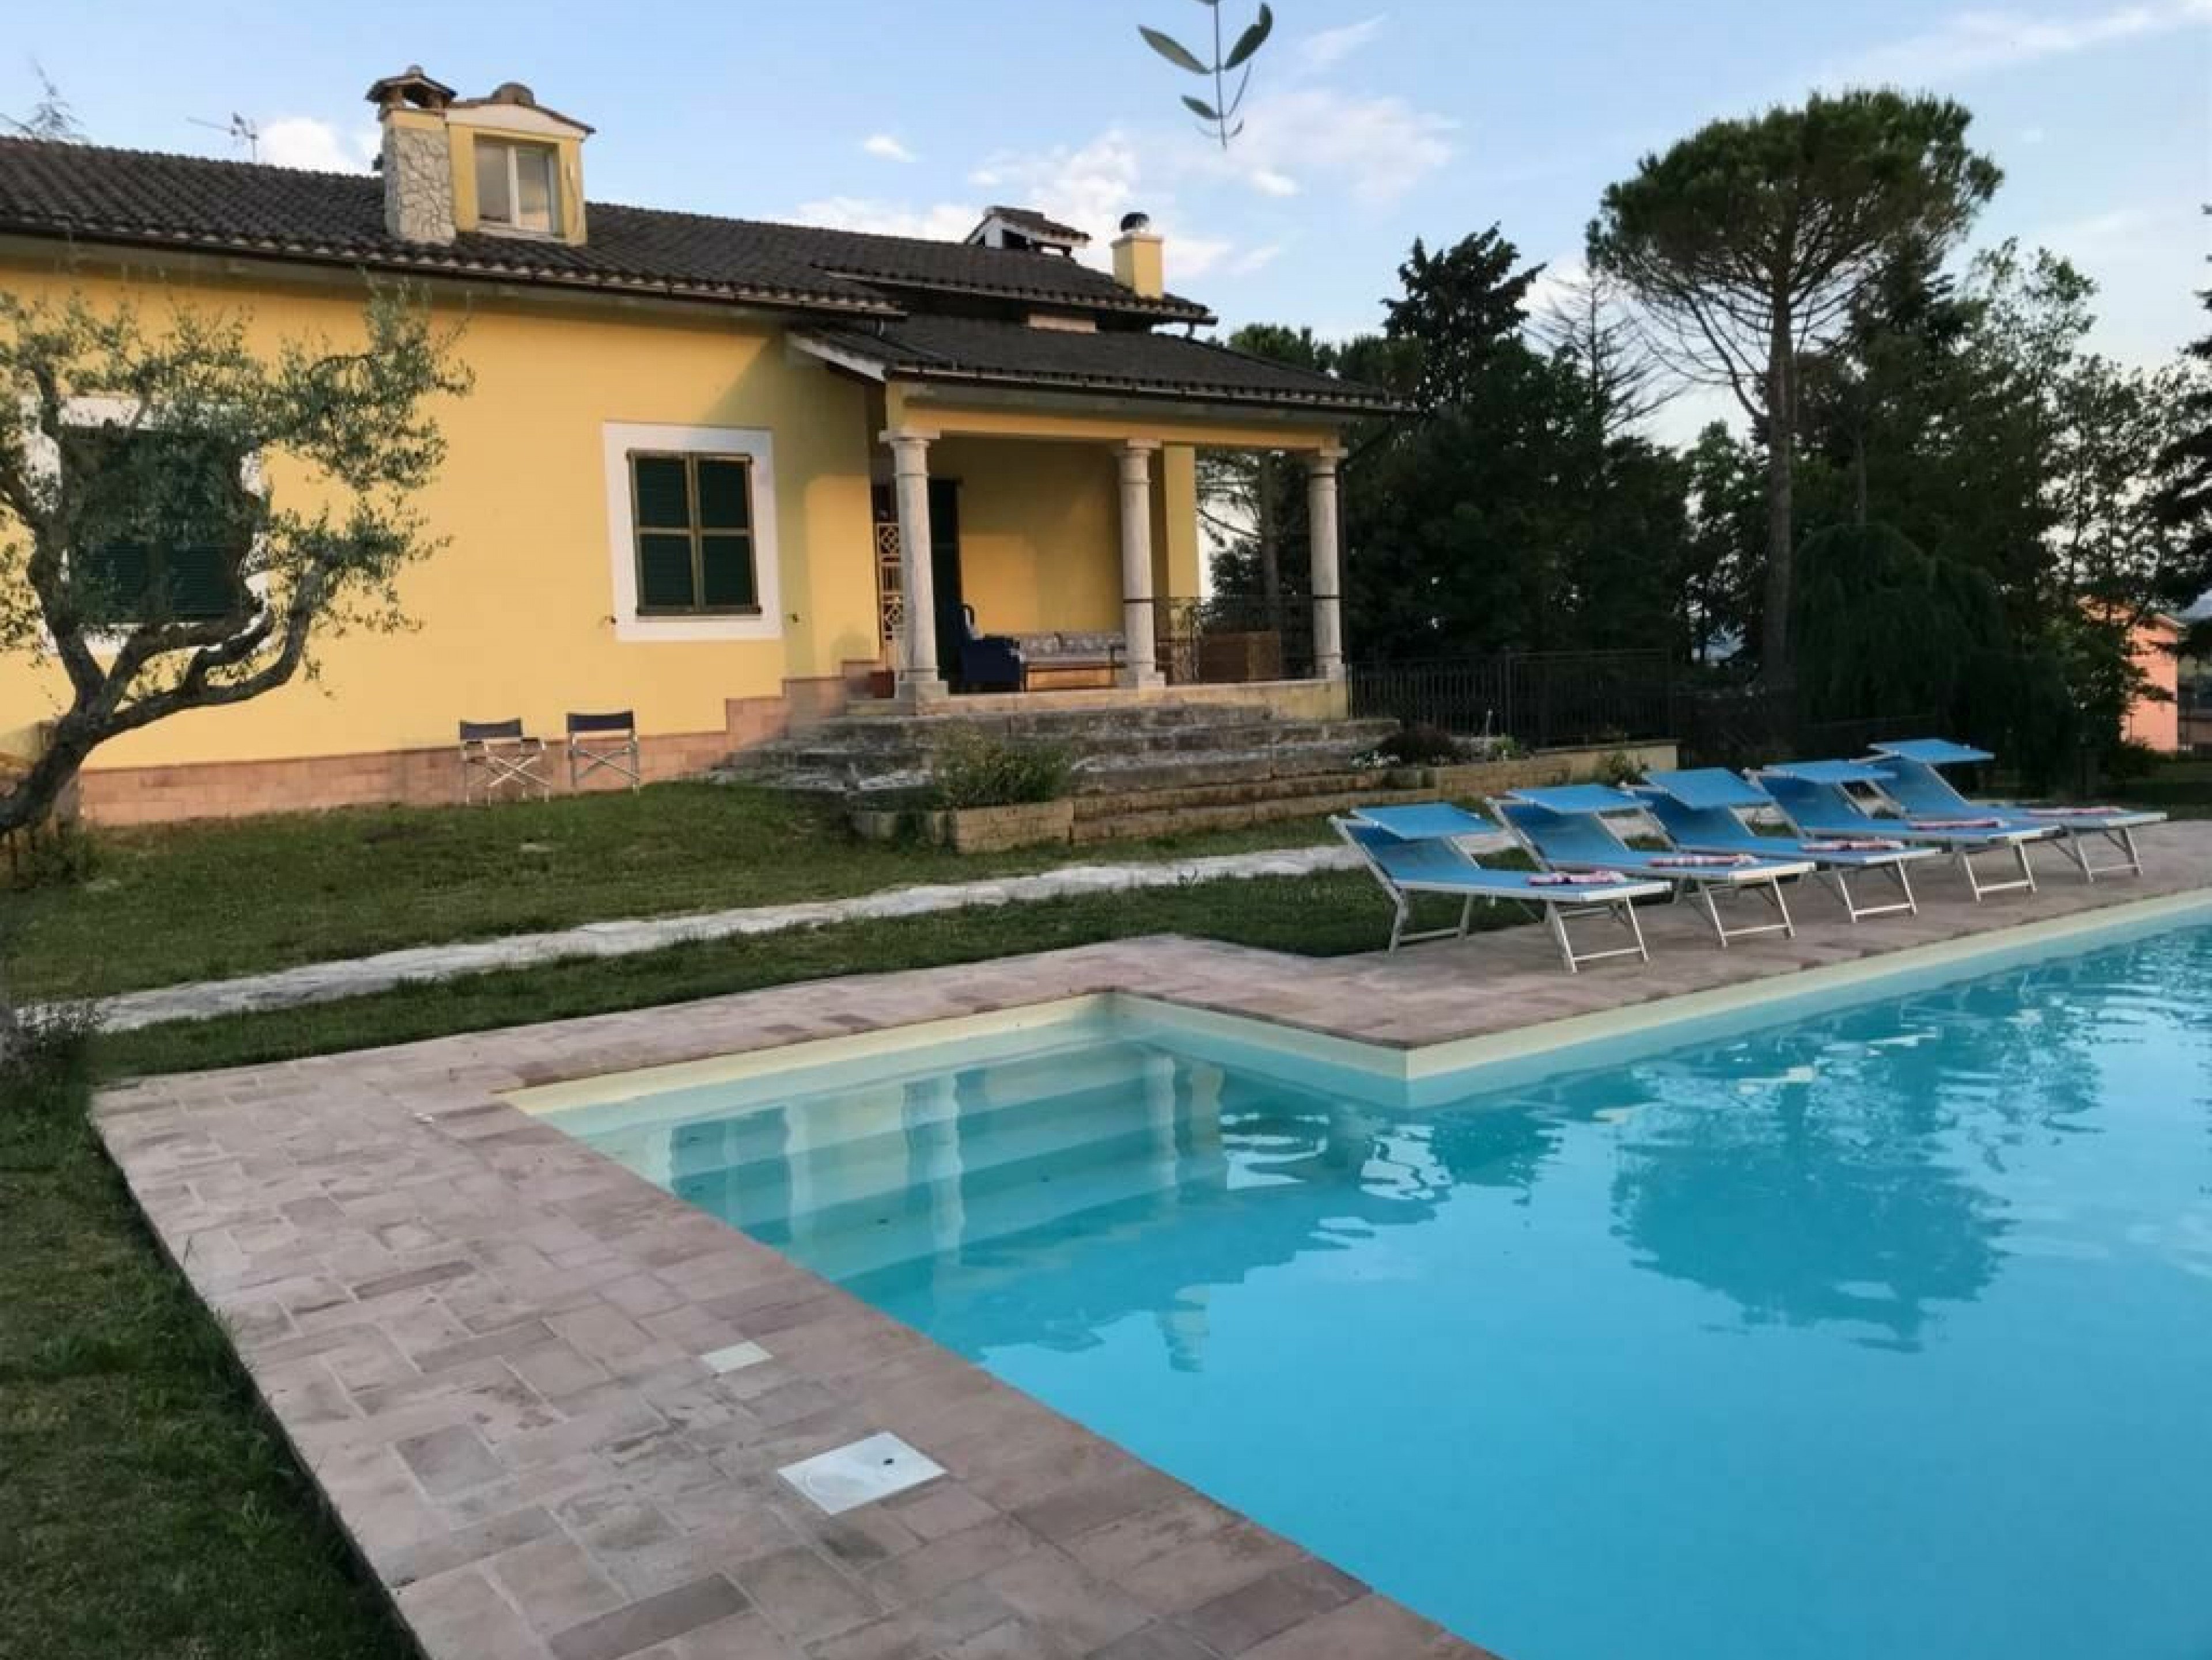 Villa San Pietro villa with games room and pool